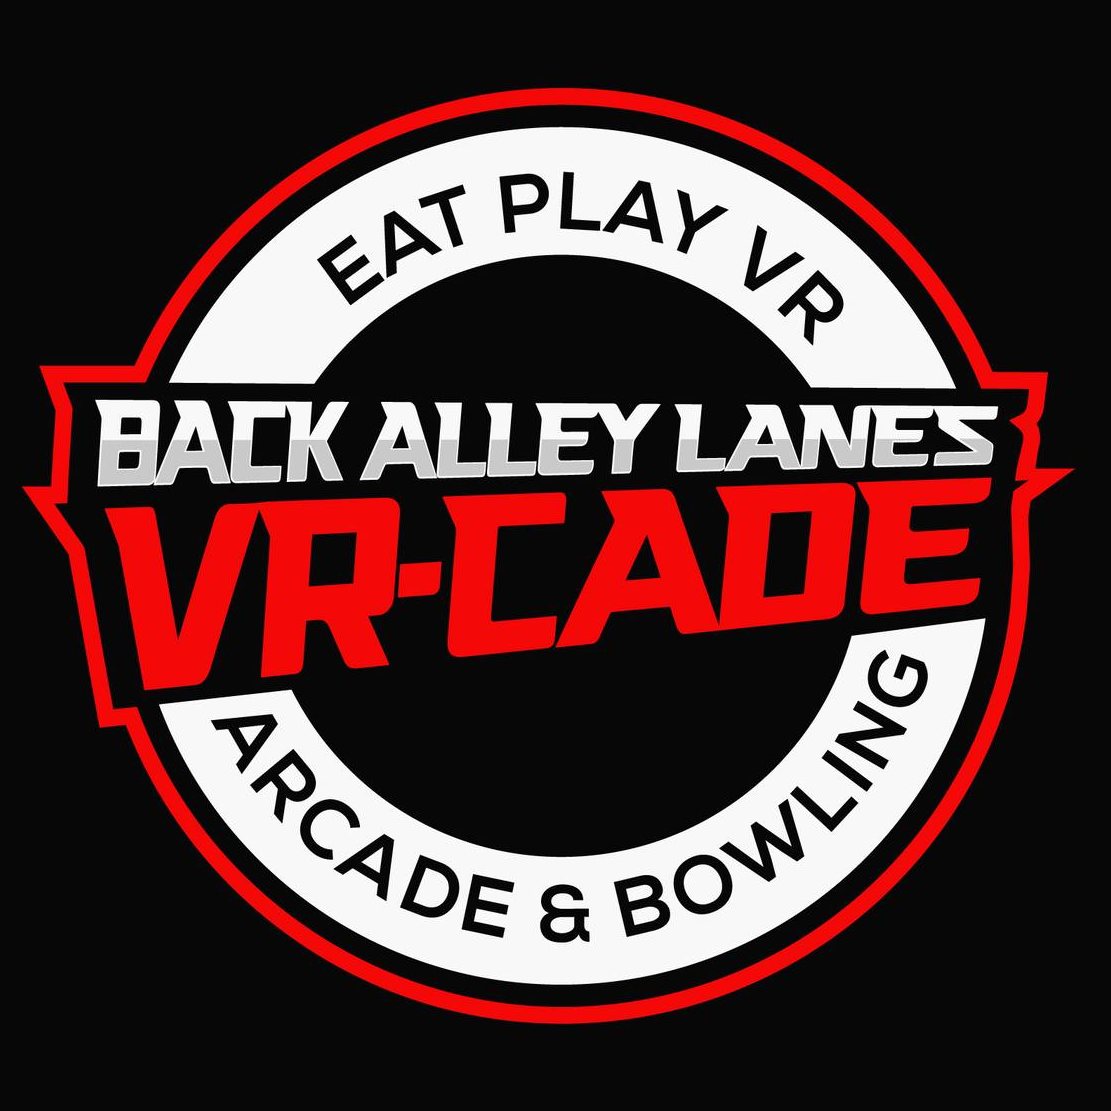 Back Alley Lanes VR-Cade